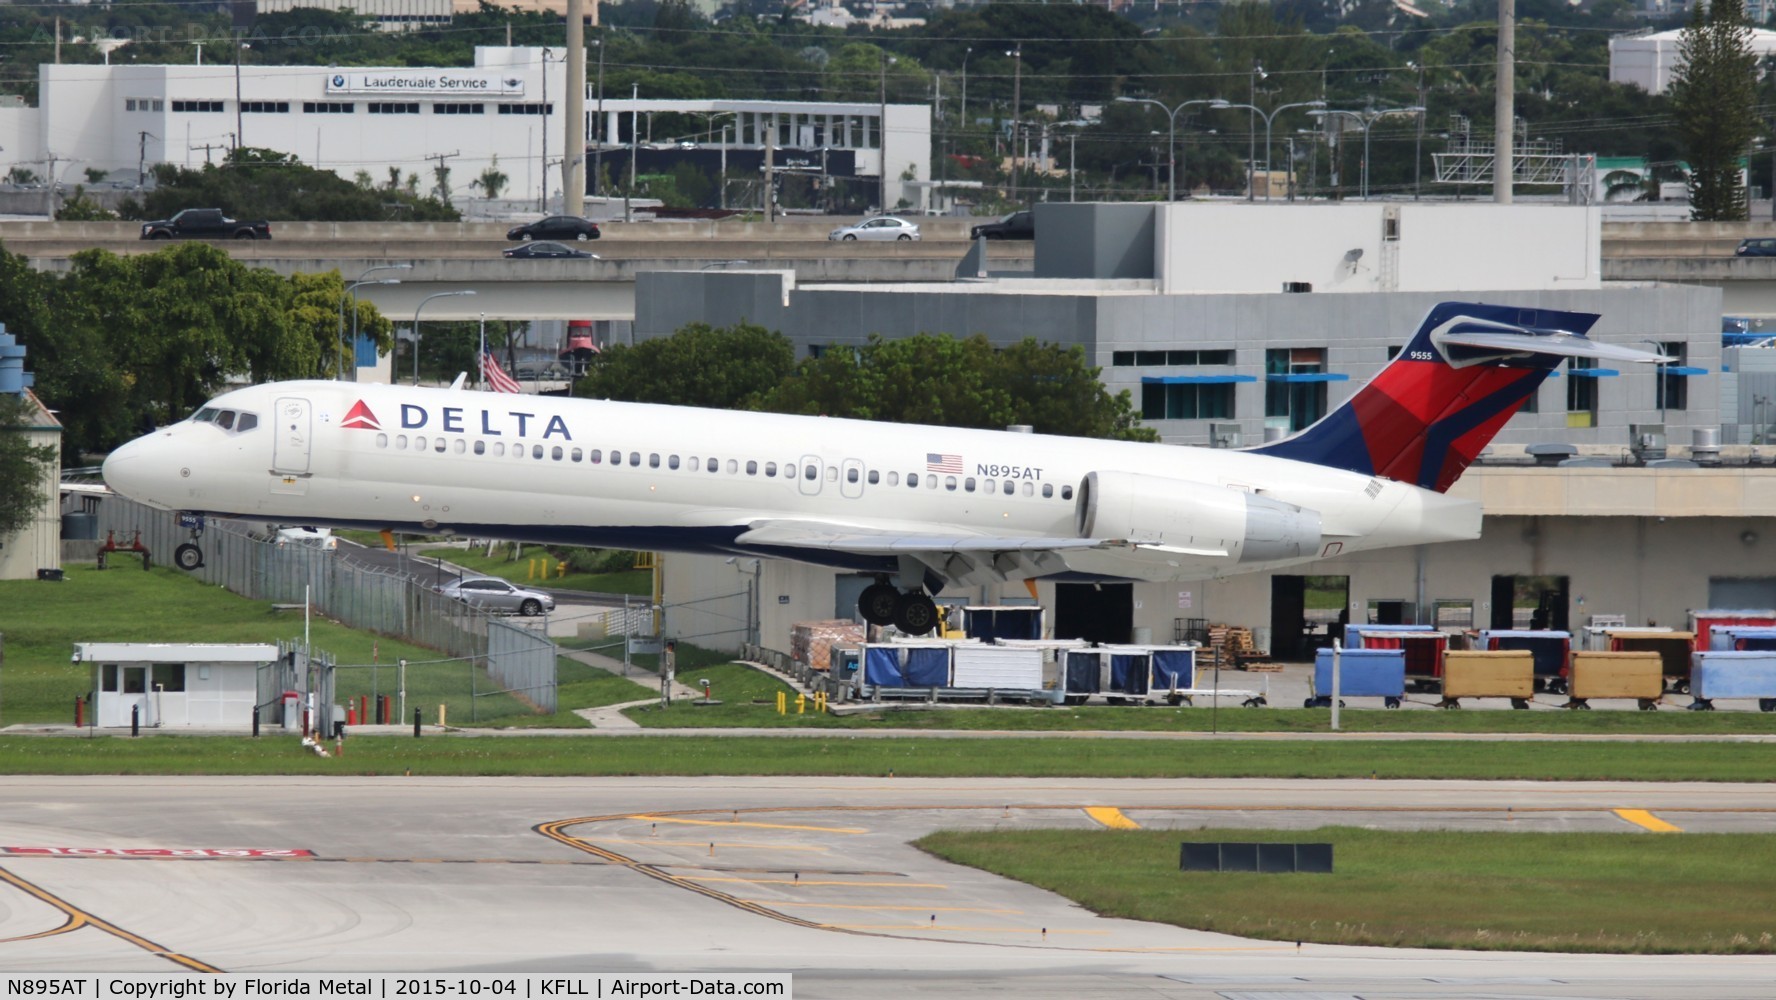 N895AT, 2004 Boeing 717-200 C/N 55047, Delta 717